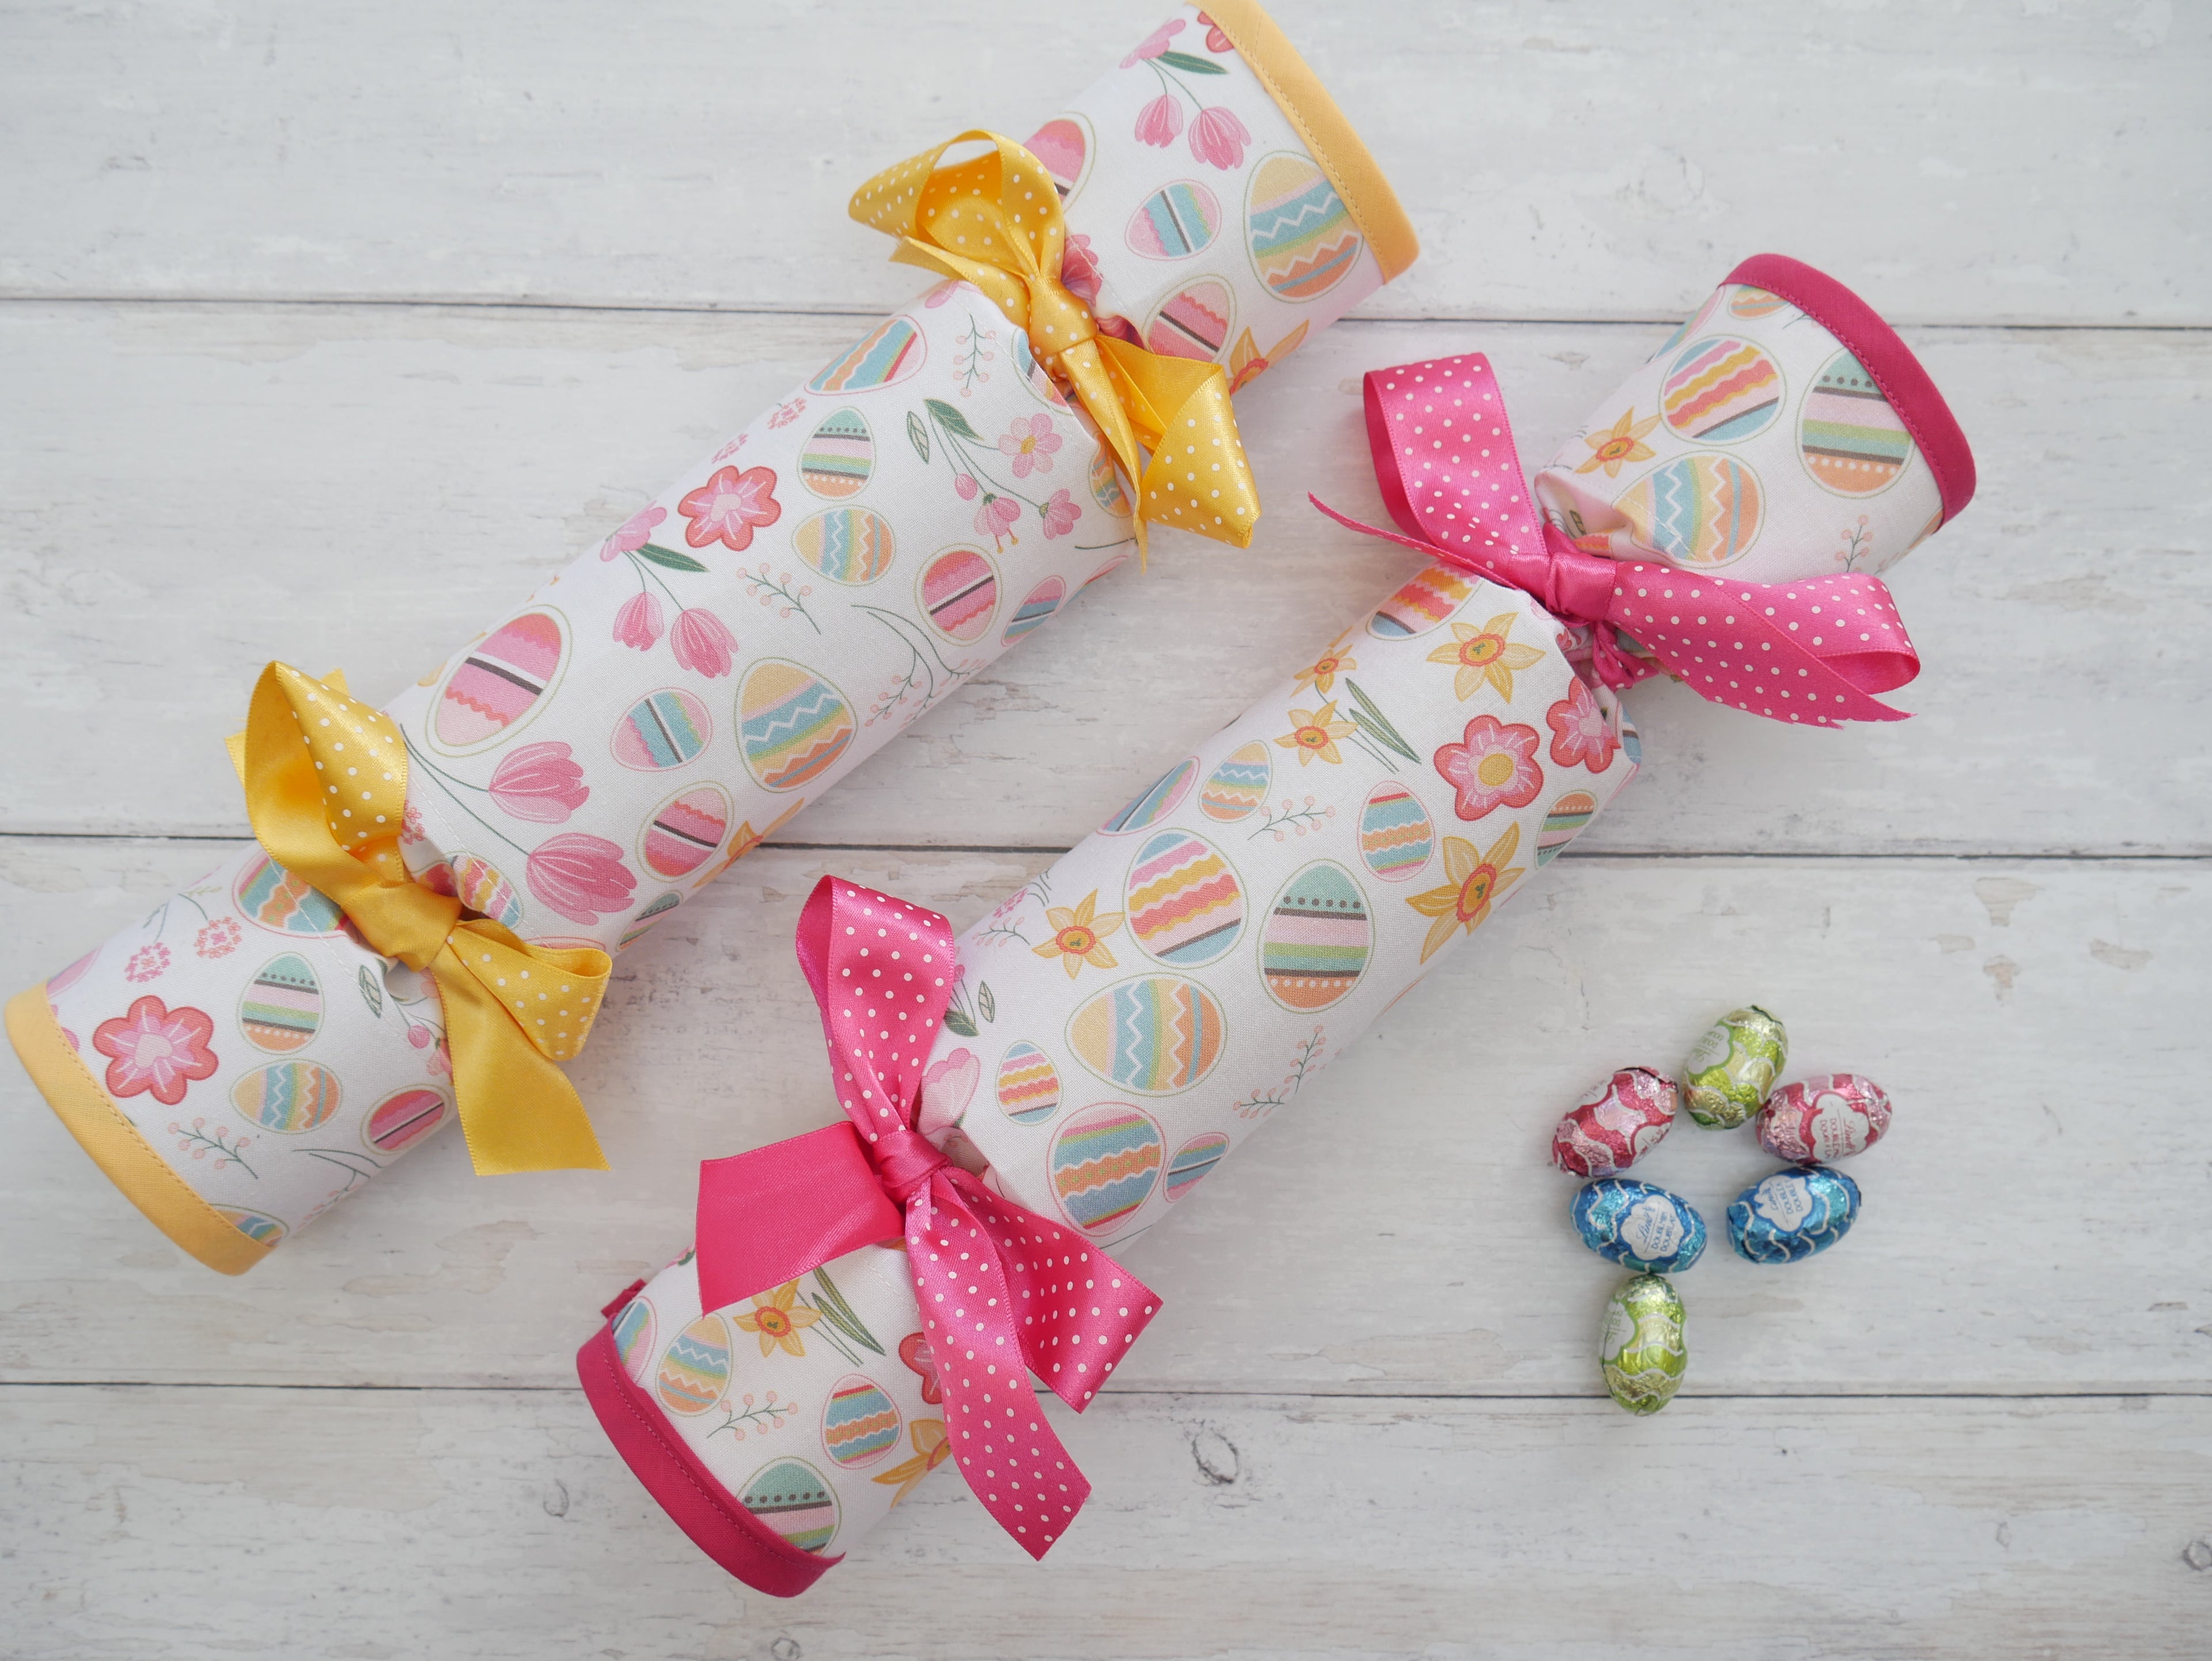 Reversible Fabric Crackers Kit - Easter-Sewing Kit-Flying Bobbins Haberdashery